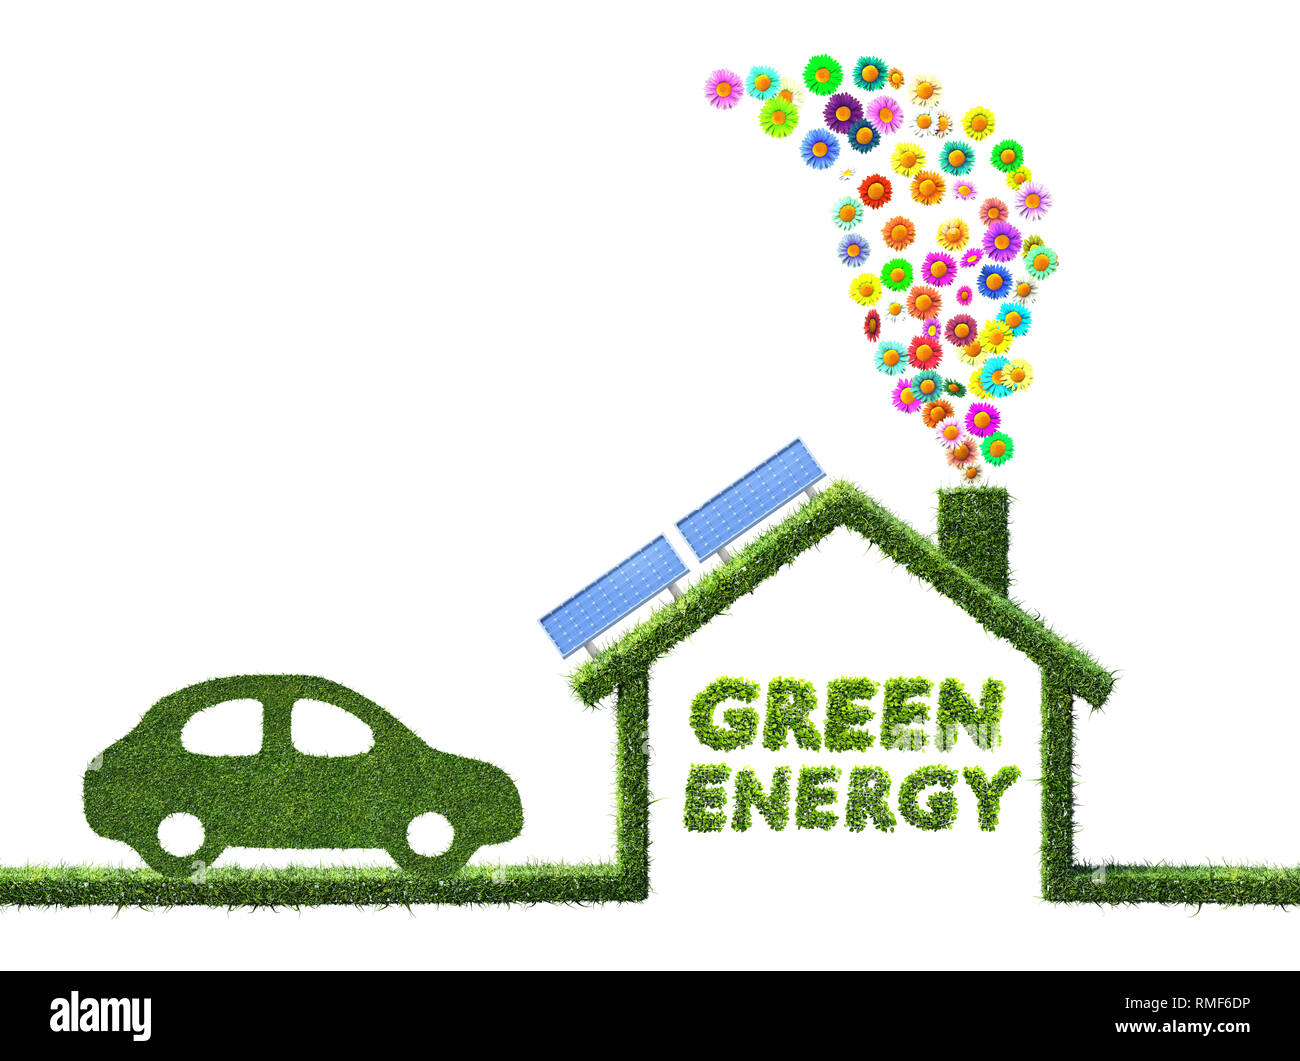 Eco Casa e energia verde concetto fatti di erba 3D illustrazione Foto Stock